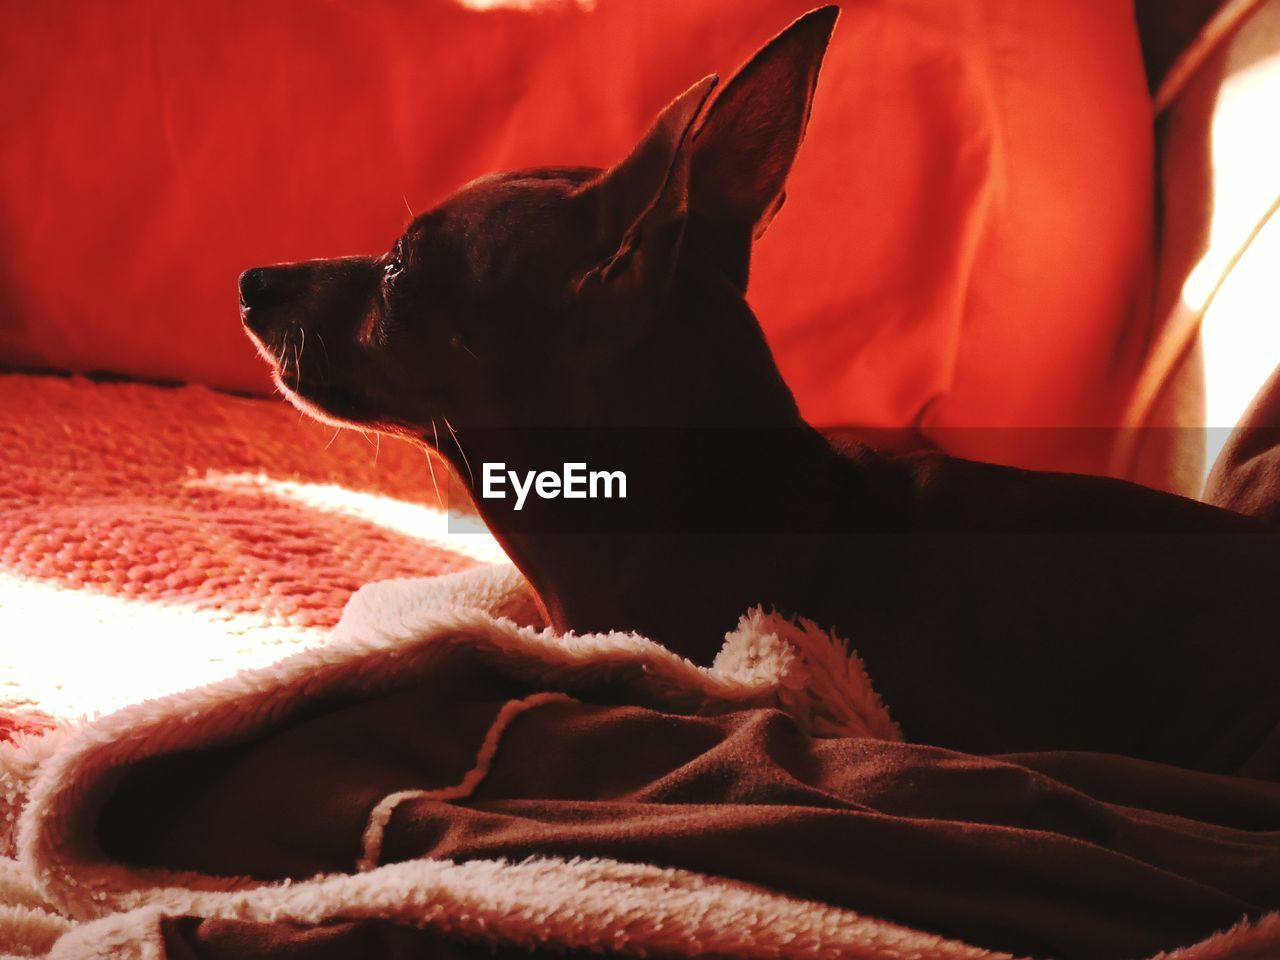 BLACK DOG RESTING ON BED